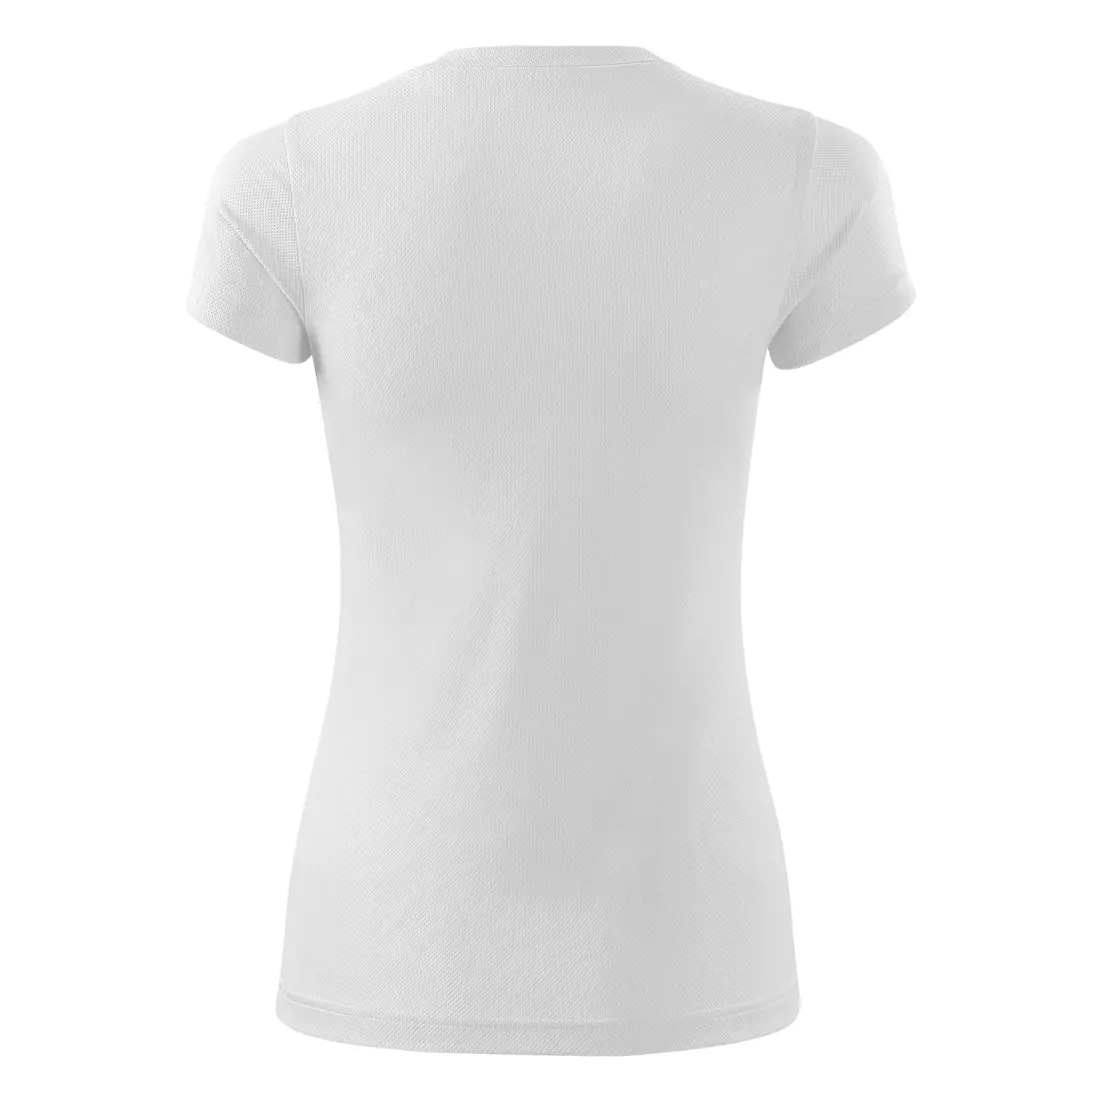 MALFINI FANTASY - Dámske športové tričko z 100 % polyesteru, biela 1400012-140